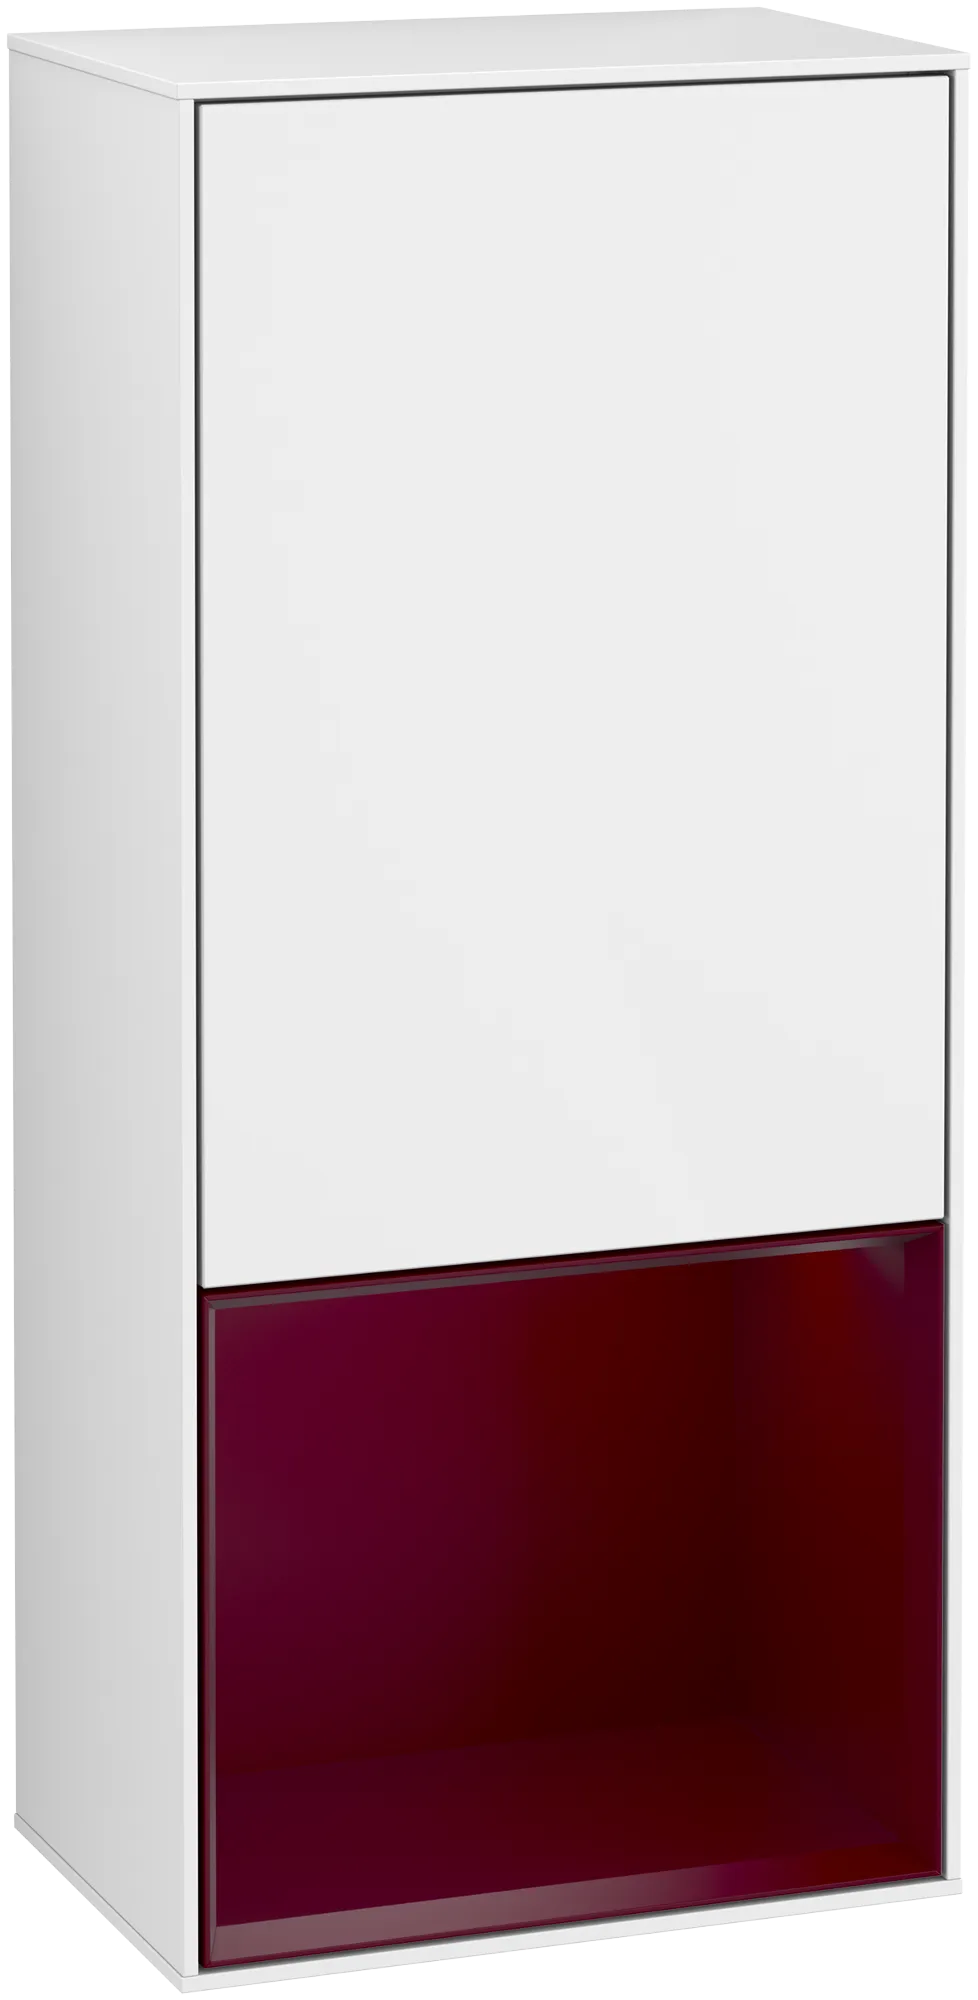 Bild von VILLEROY BOCH Finion Seitenschrank, mit Beleuchtung, 1 Tür, 418 x 936 x 270 mm, Glossy White Lacquer / Peony Matt Lacquer #G540HBGF